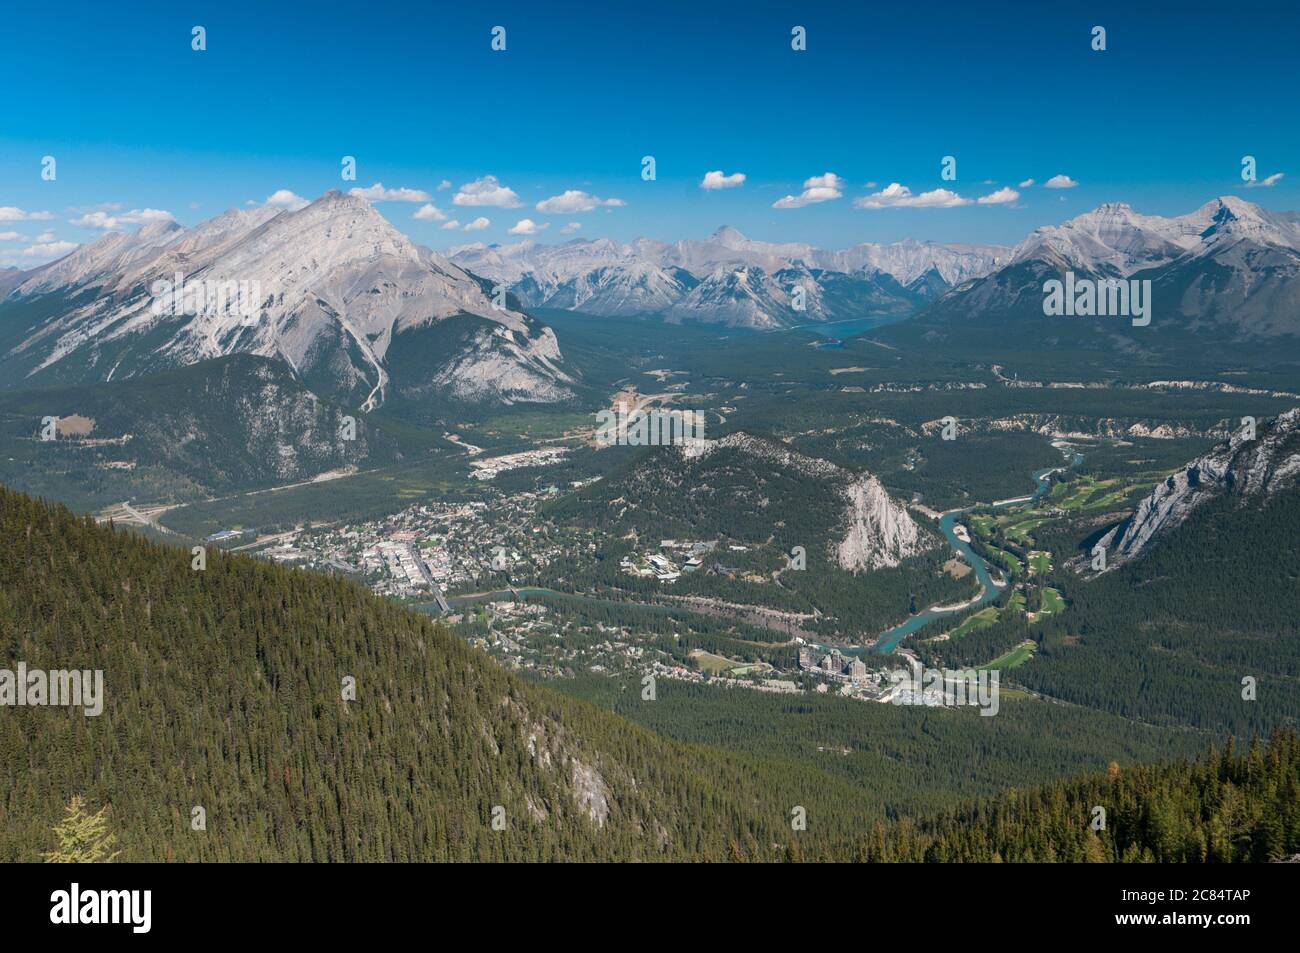 Banff, Tunnel Mountain, Cascade Mountain und die Palliser Range vom Sulphur Mountain aus gesehen, Banff, Alberta, Kanada. Stockfoto